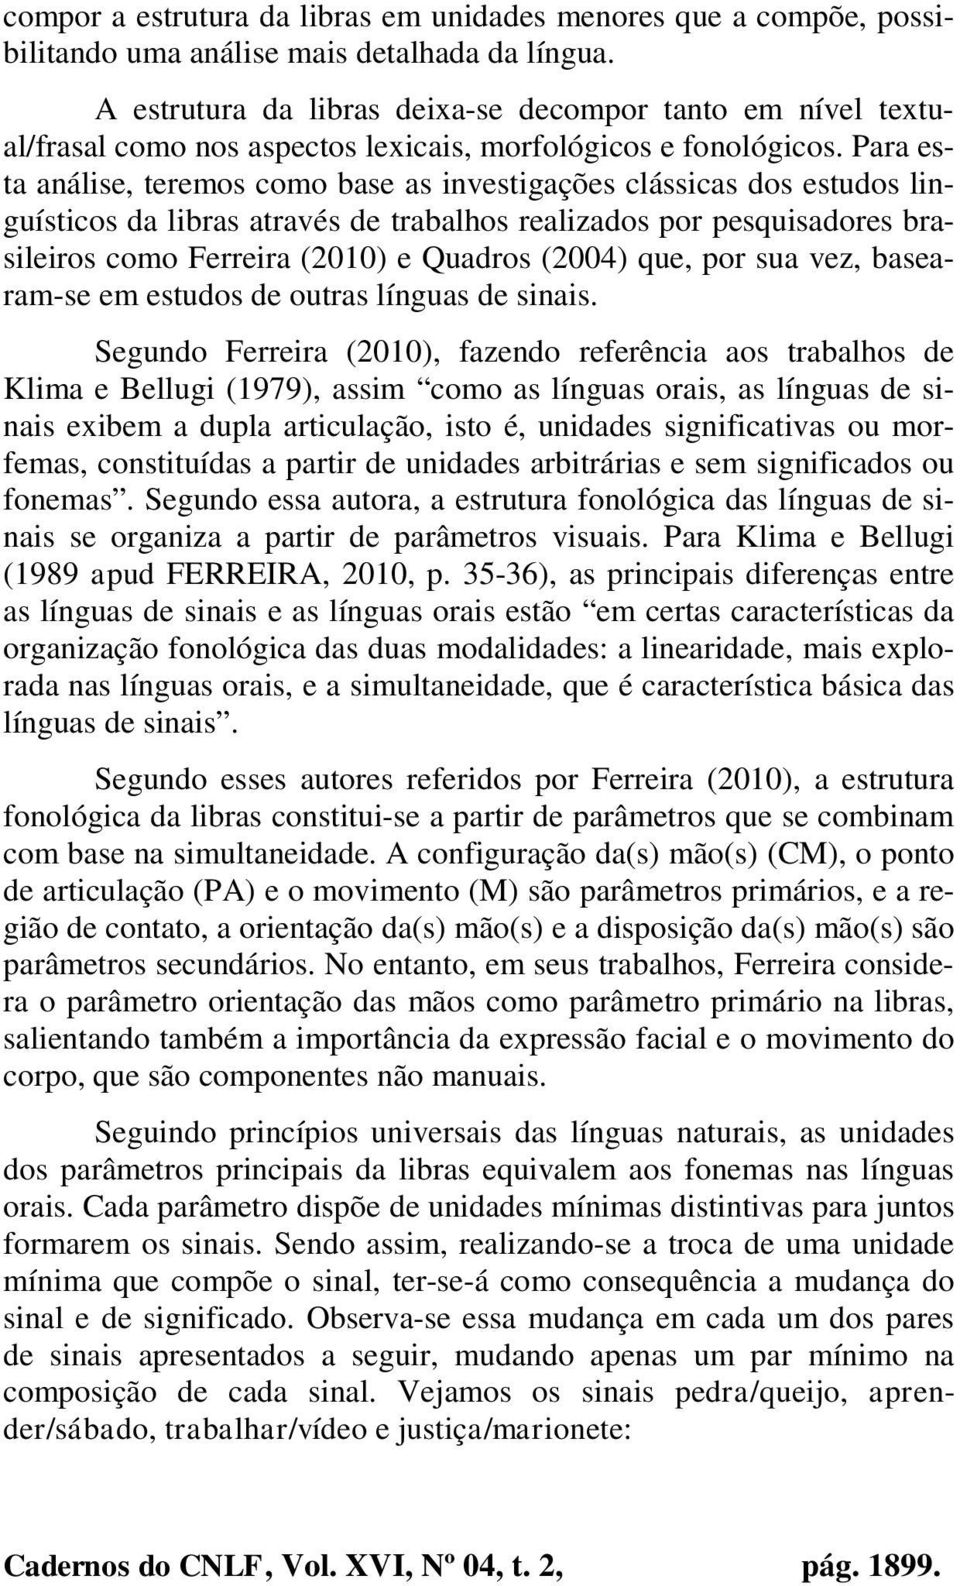 Para esta análise, teremos como base as investigações clássicas dos estudos linguísticos da libras através de trabalhos realizados por pesquisadores brasileiros como Ferreira (2010) e Quadros (2004)